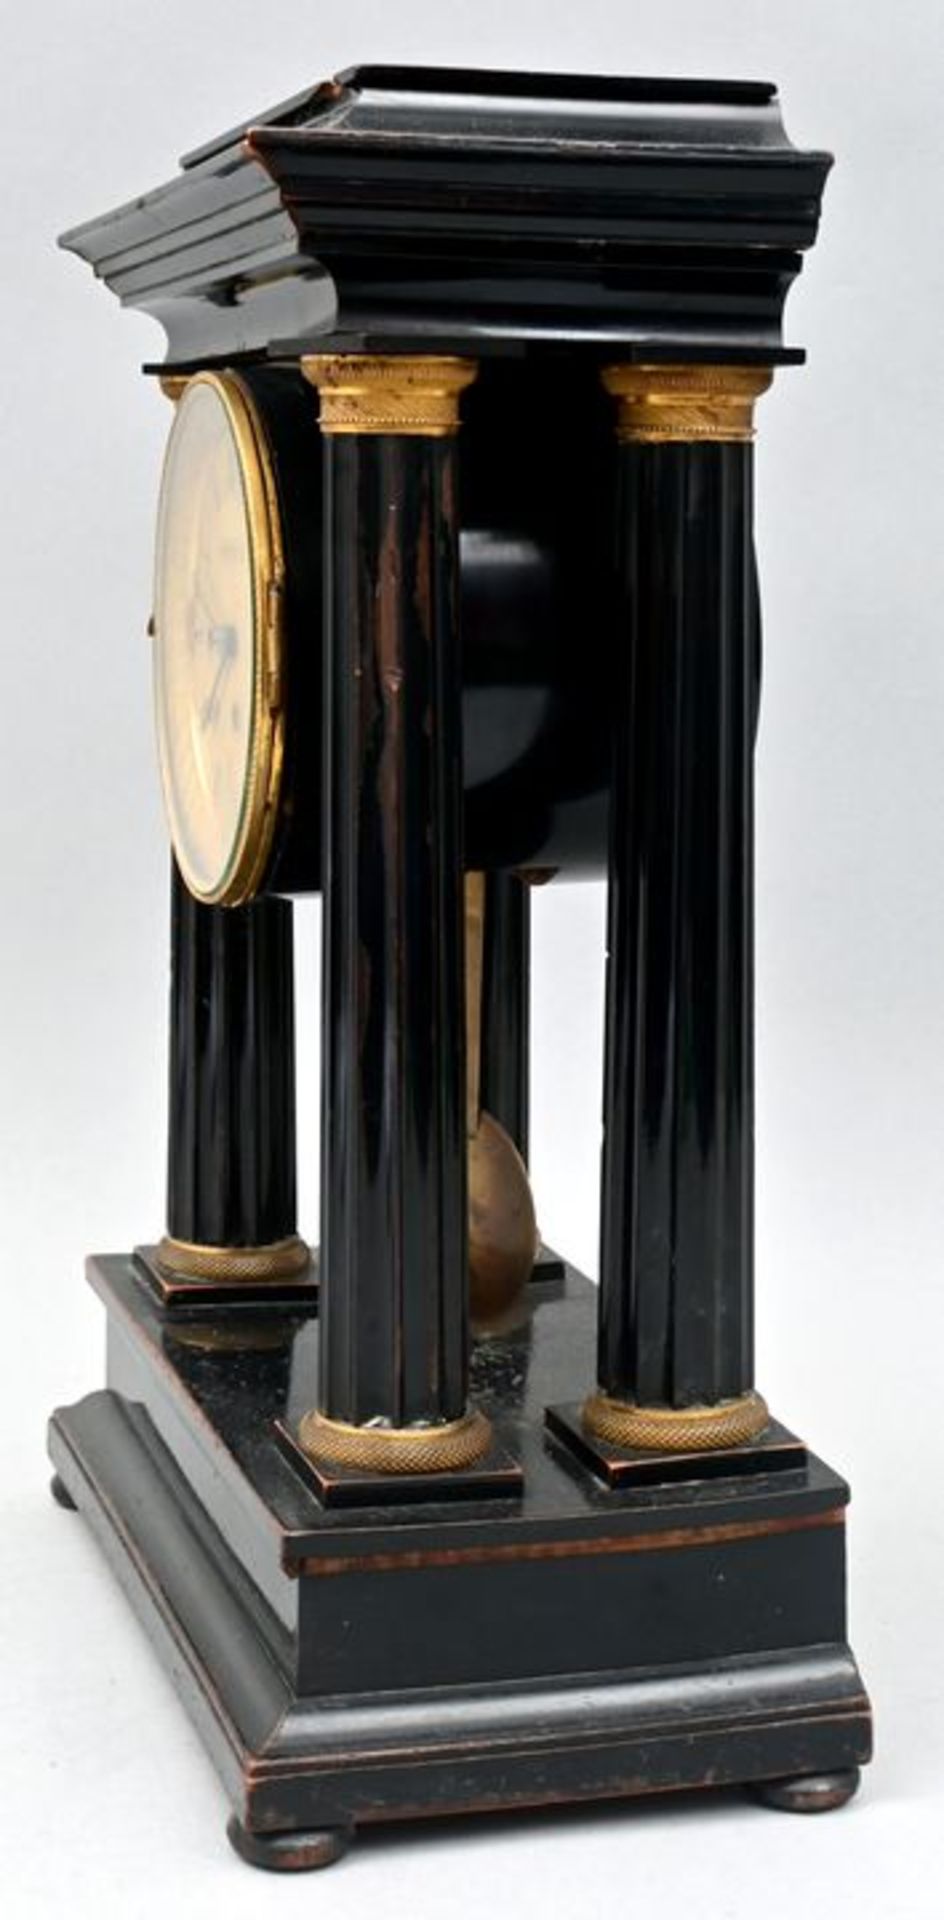 412 Stockuhr, Holz mit Säulen/ bracket clock - Bild 3 aus 10